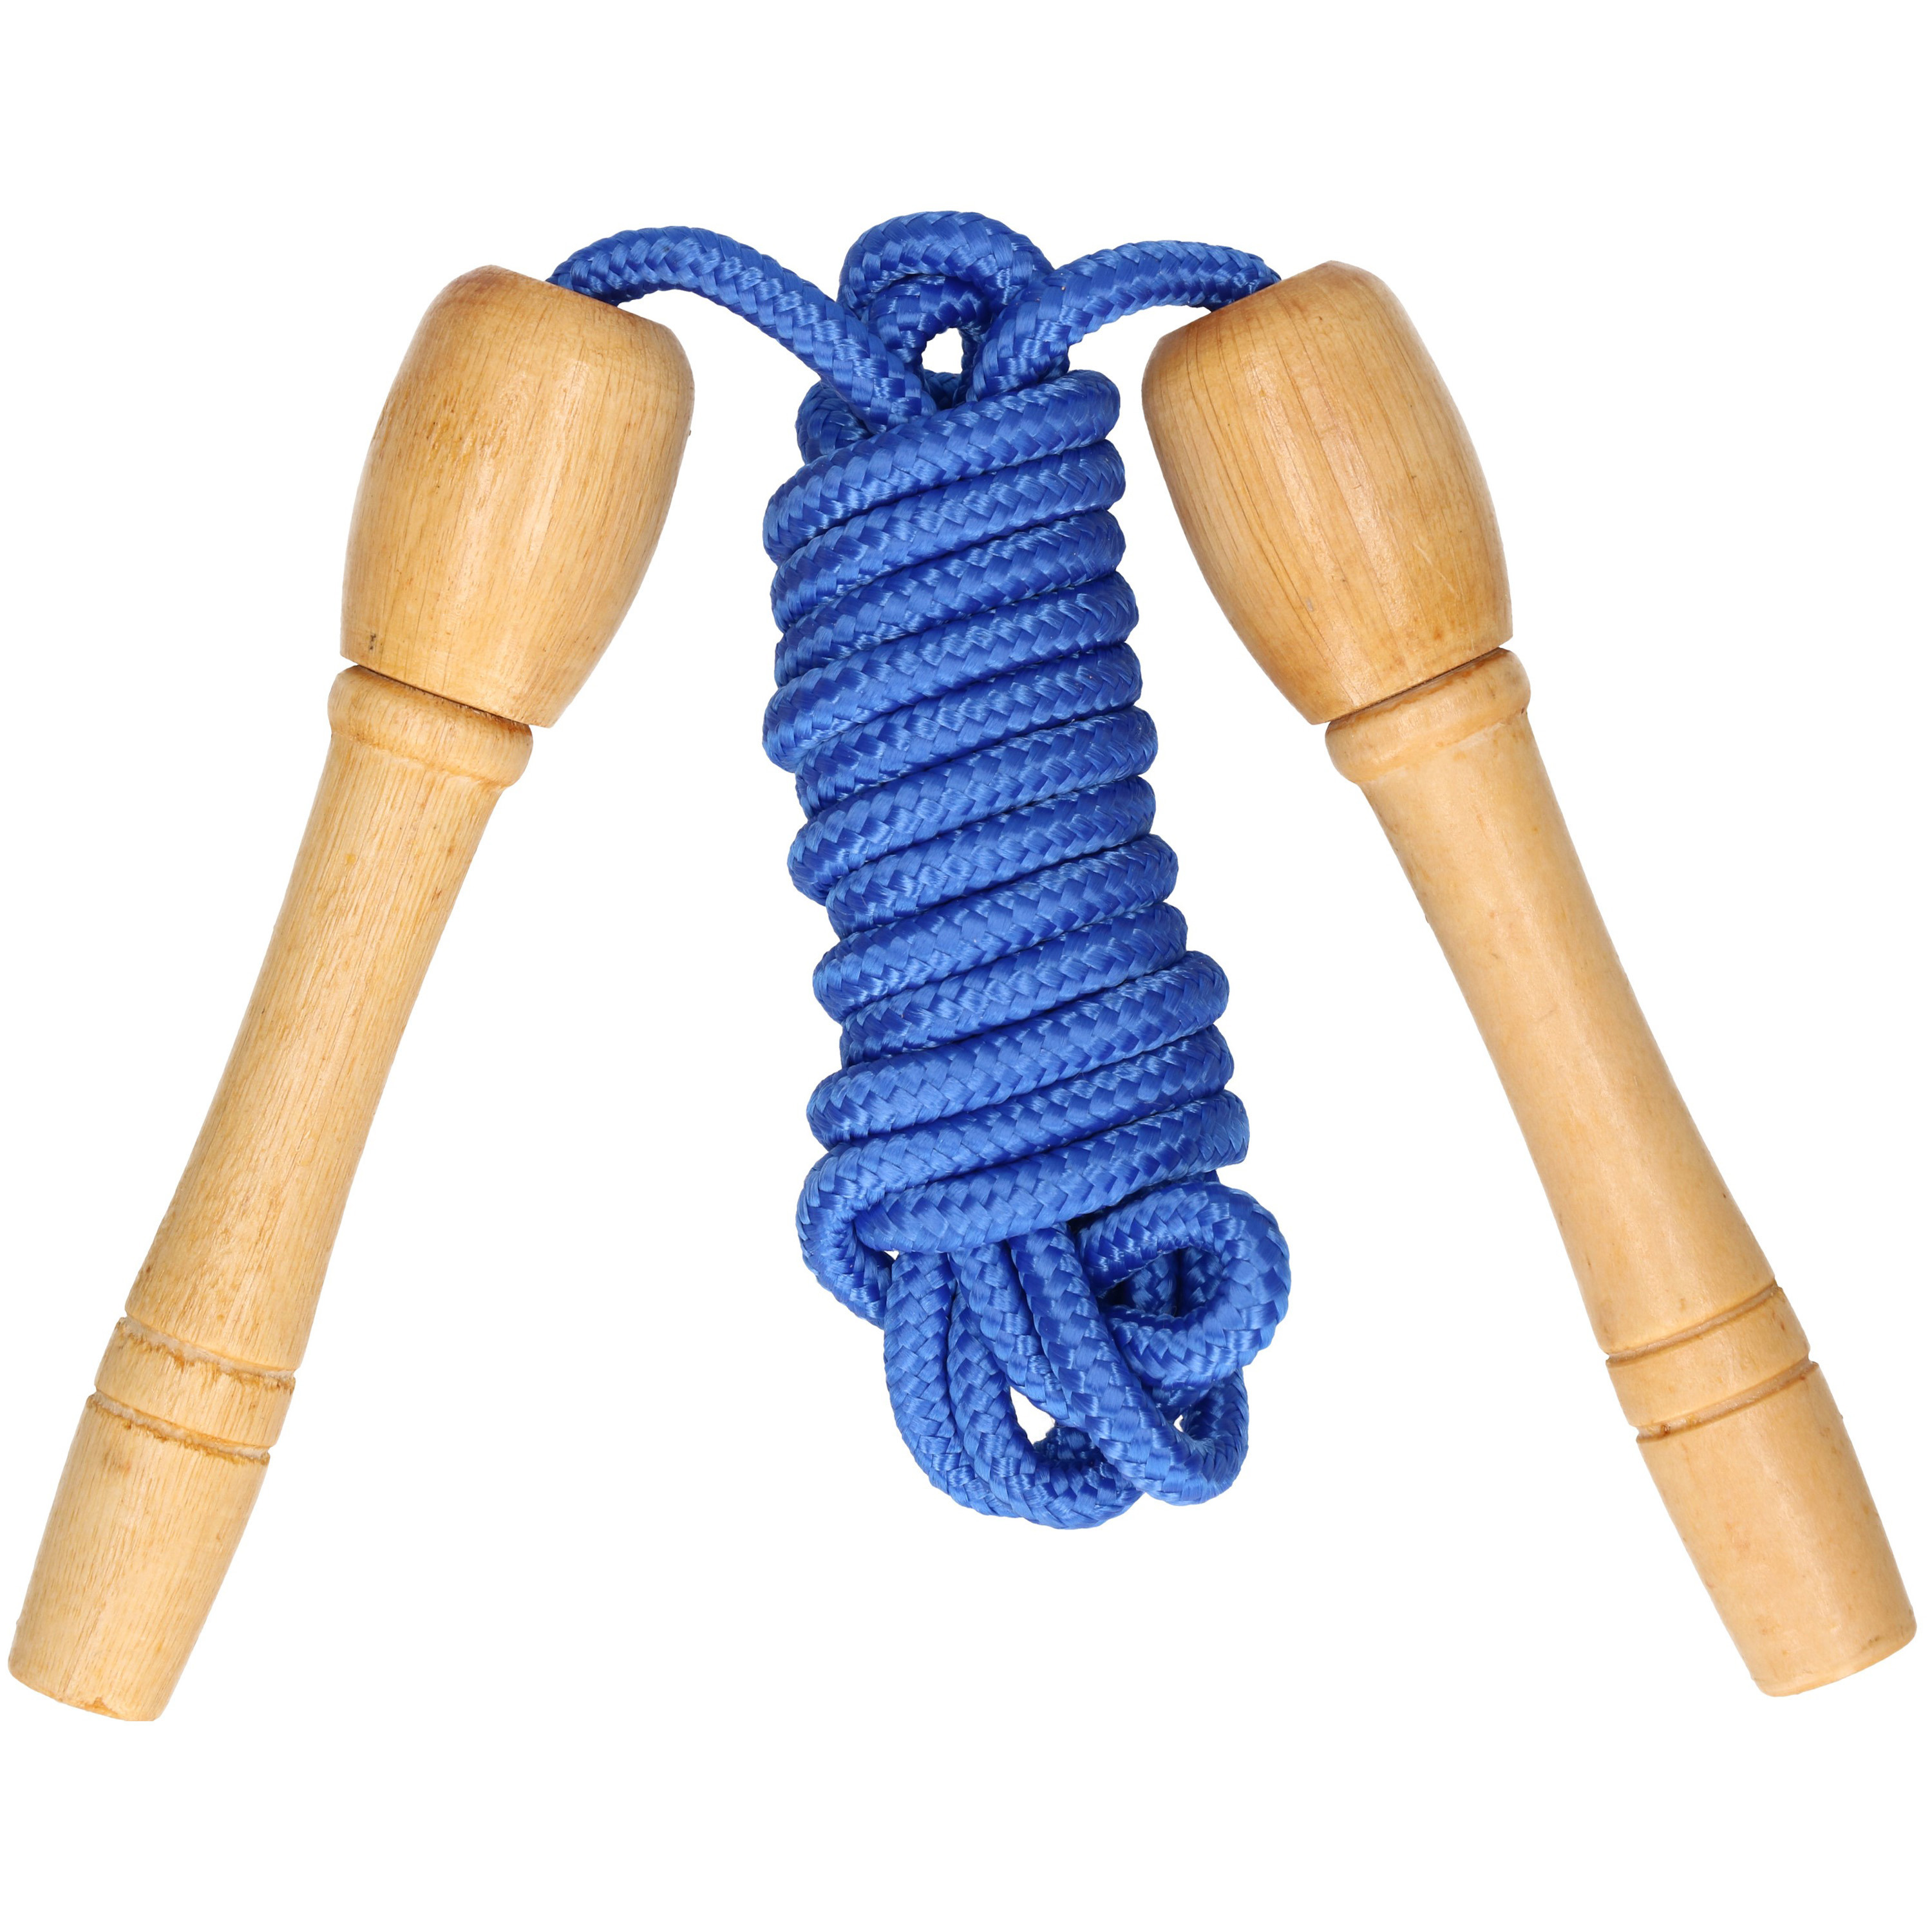 Springtouw speelgoed met houten handvat - blauw - 240 cm - buitenspeelgoed